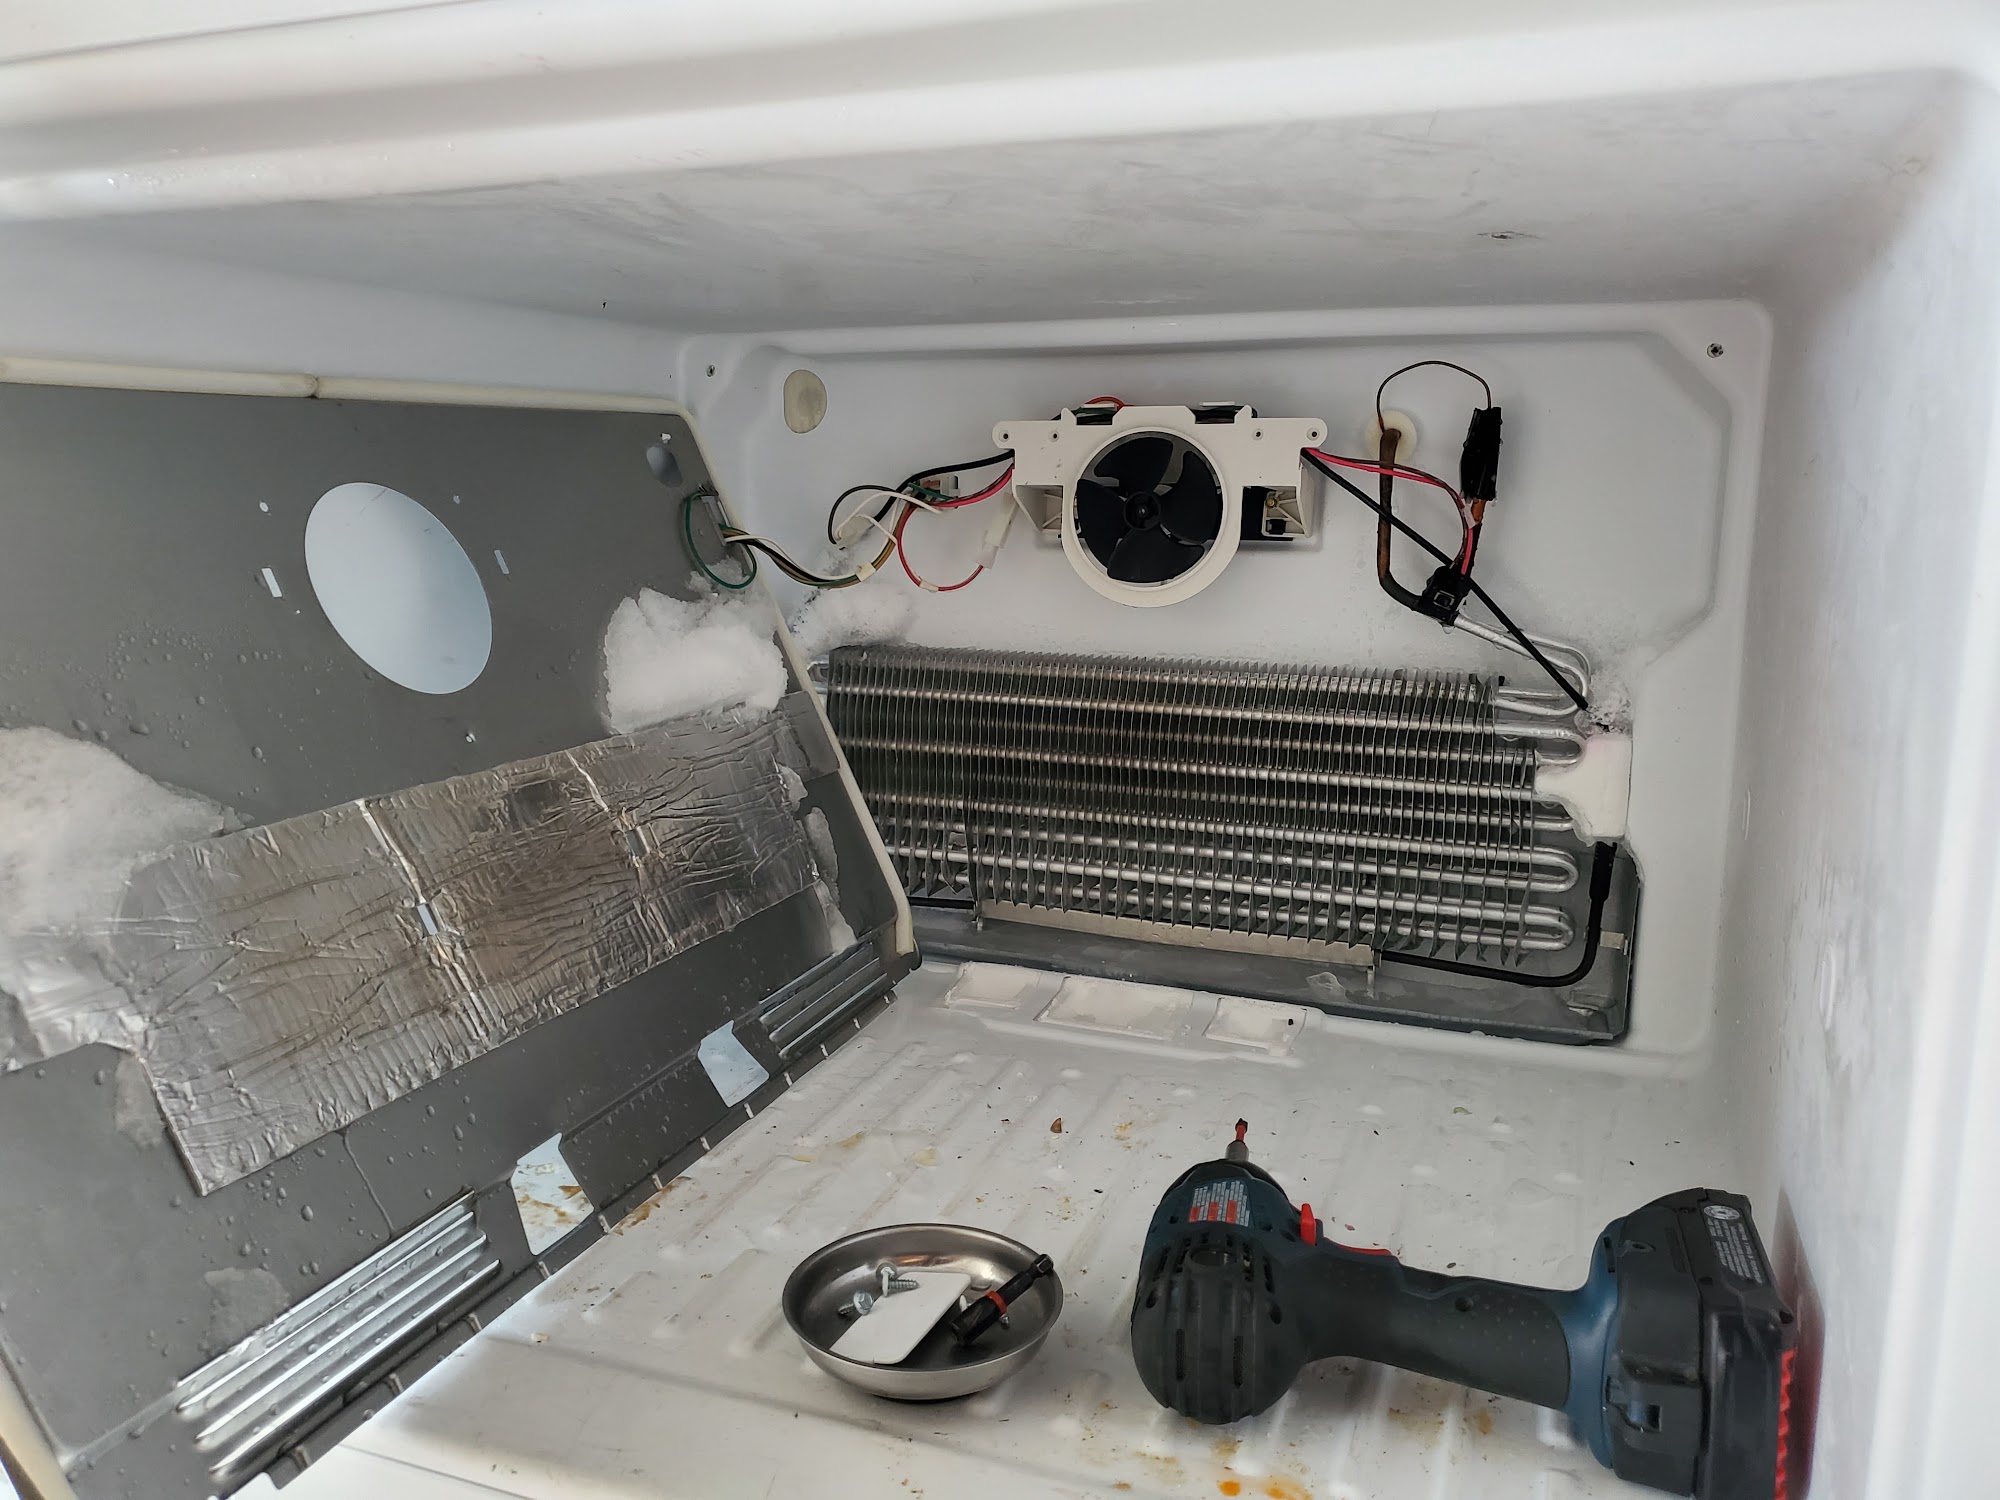 Masters4u, HVAC & appliance repair service